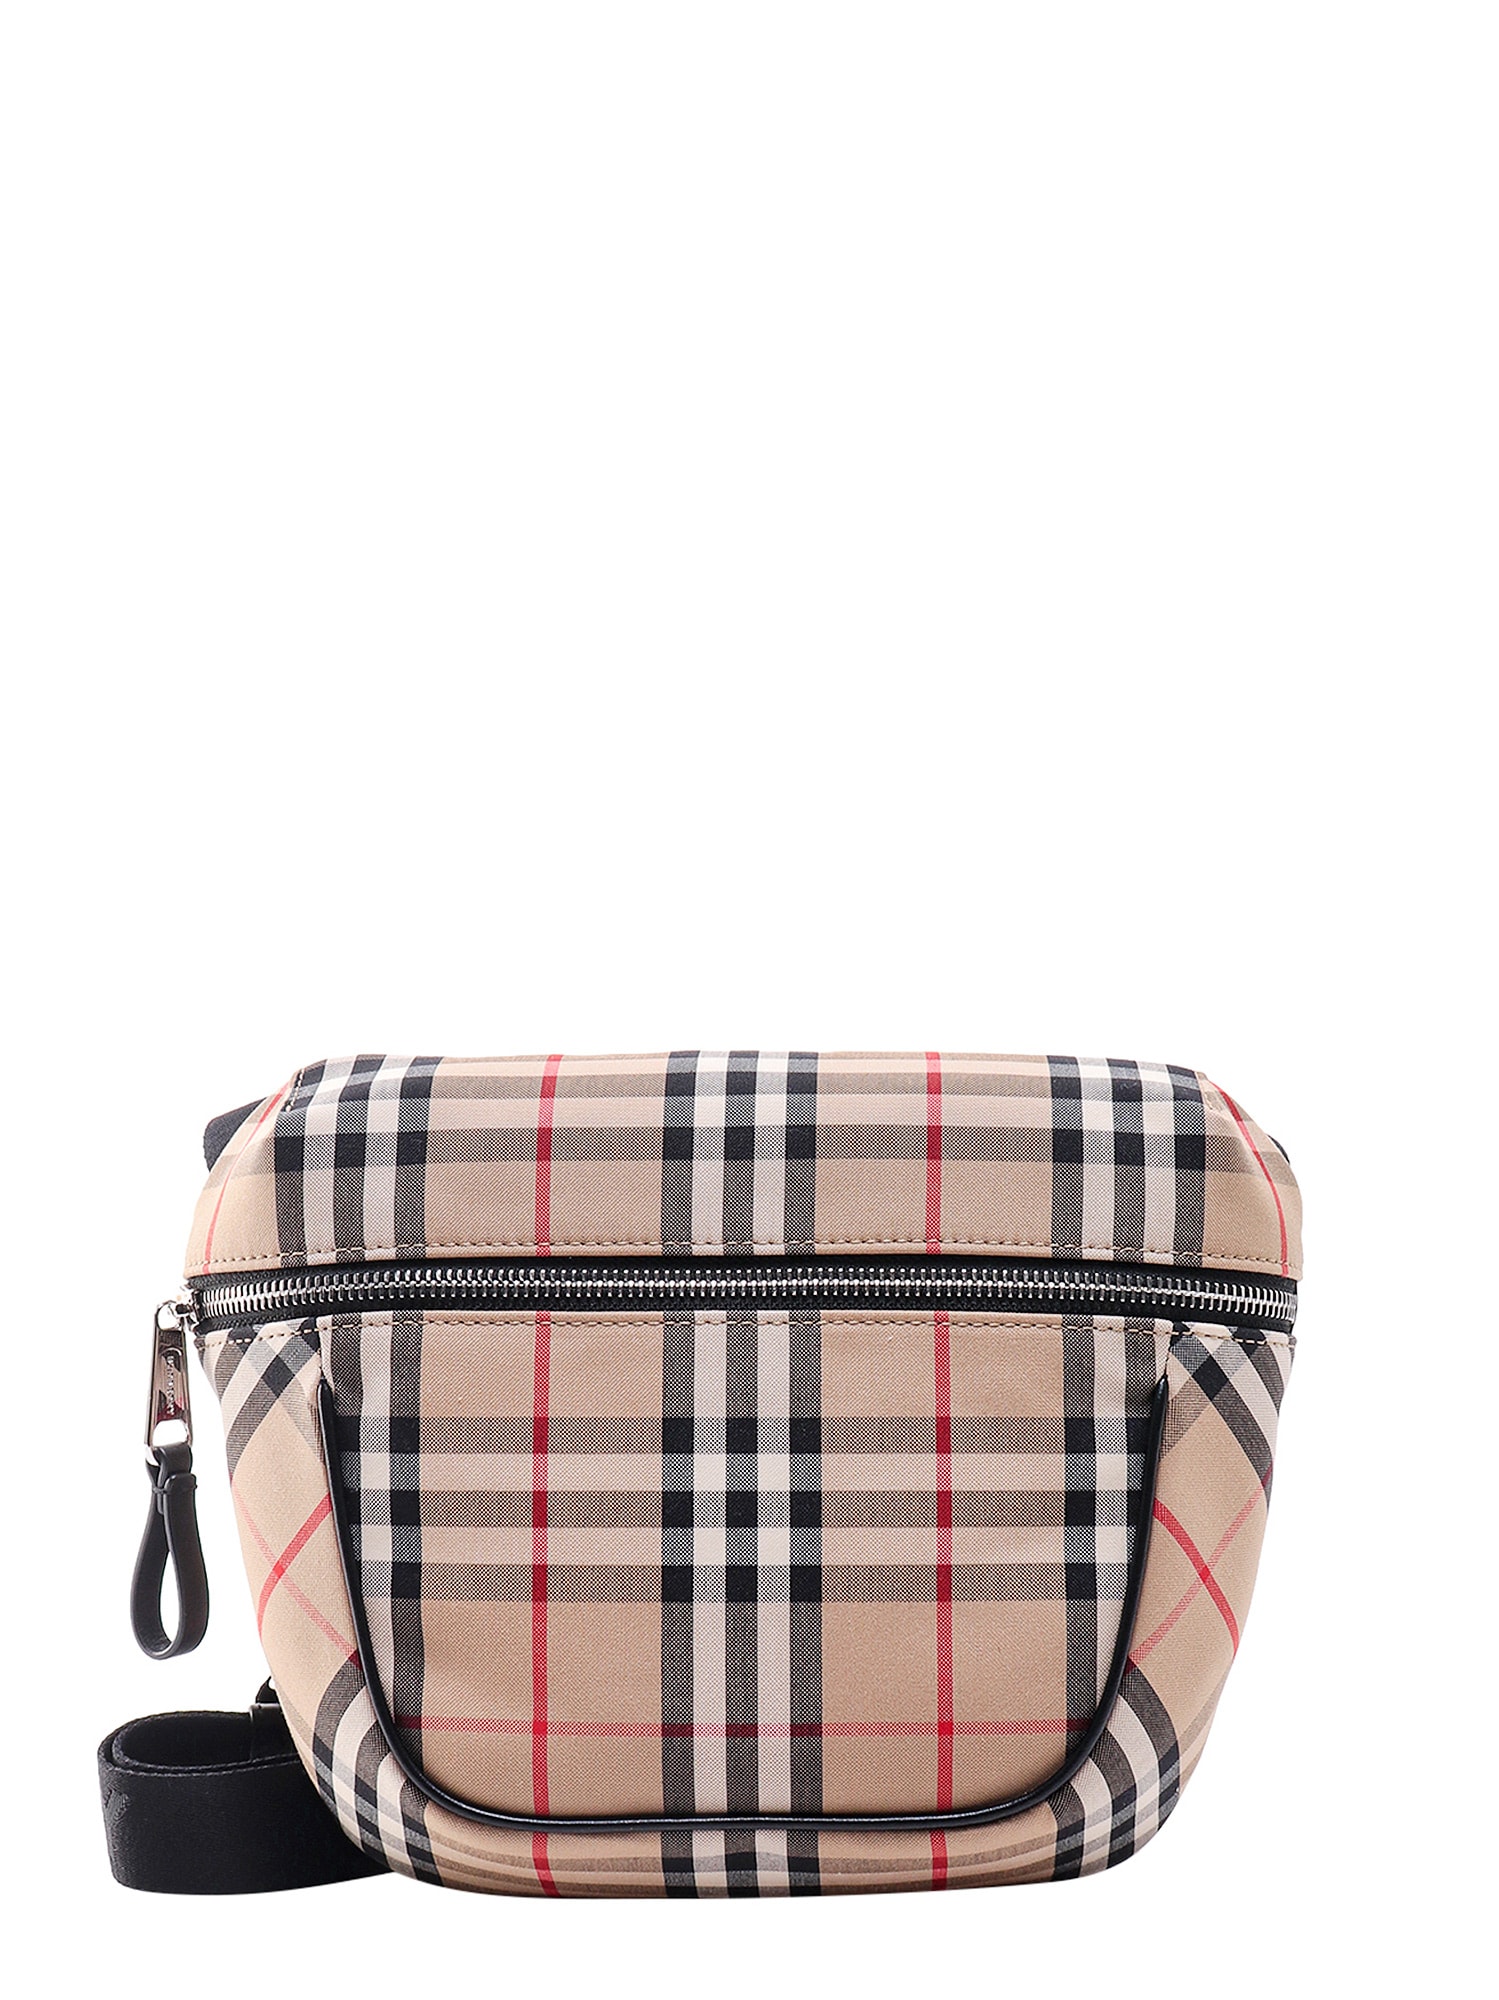 Burberry Archie Shoulder Bag